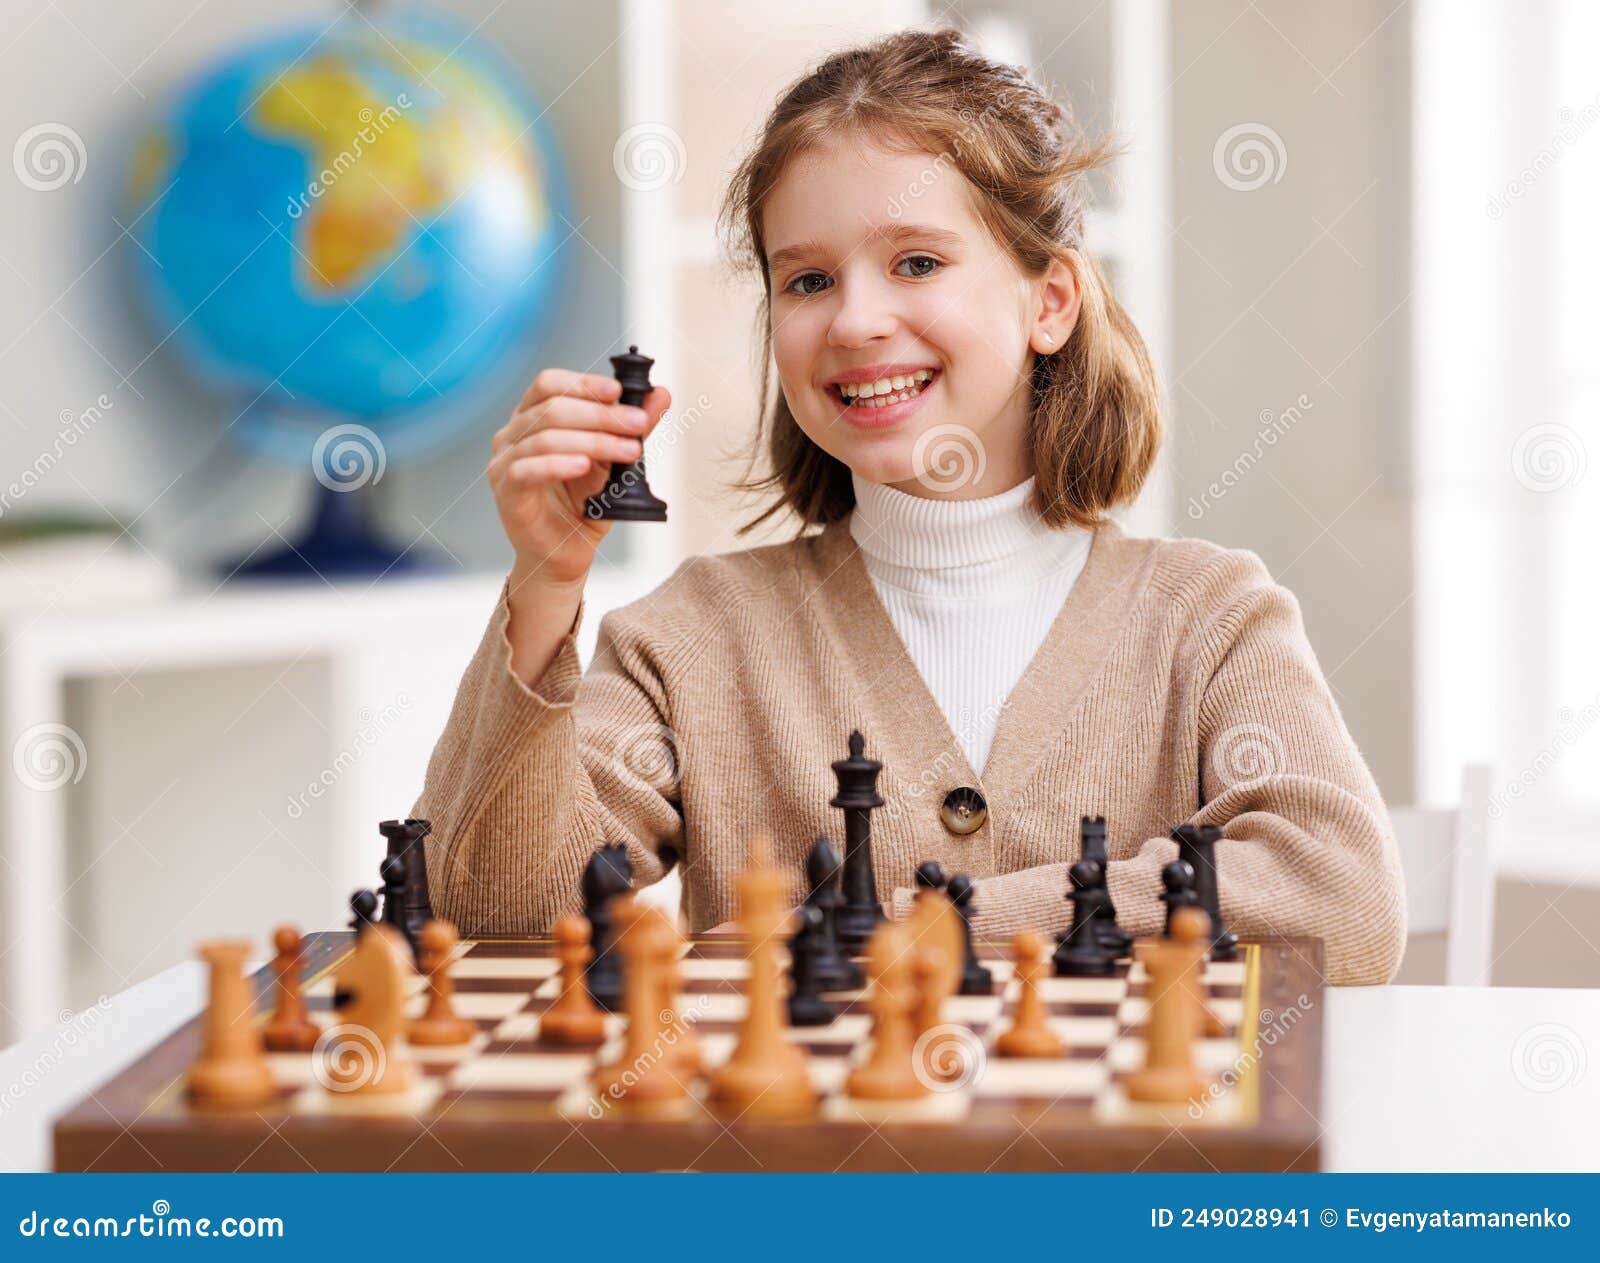 Garota Feliz Jogando Xadrez Na Sala De Aula Clara Imagem de Stock